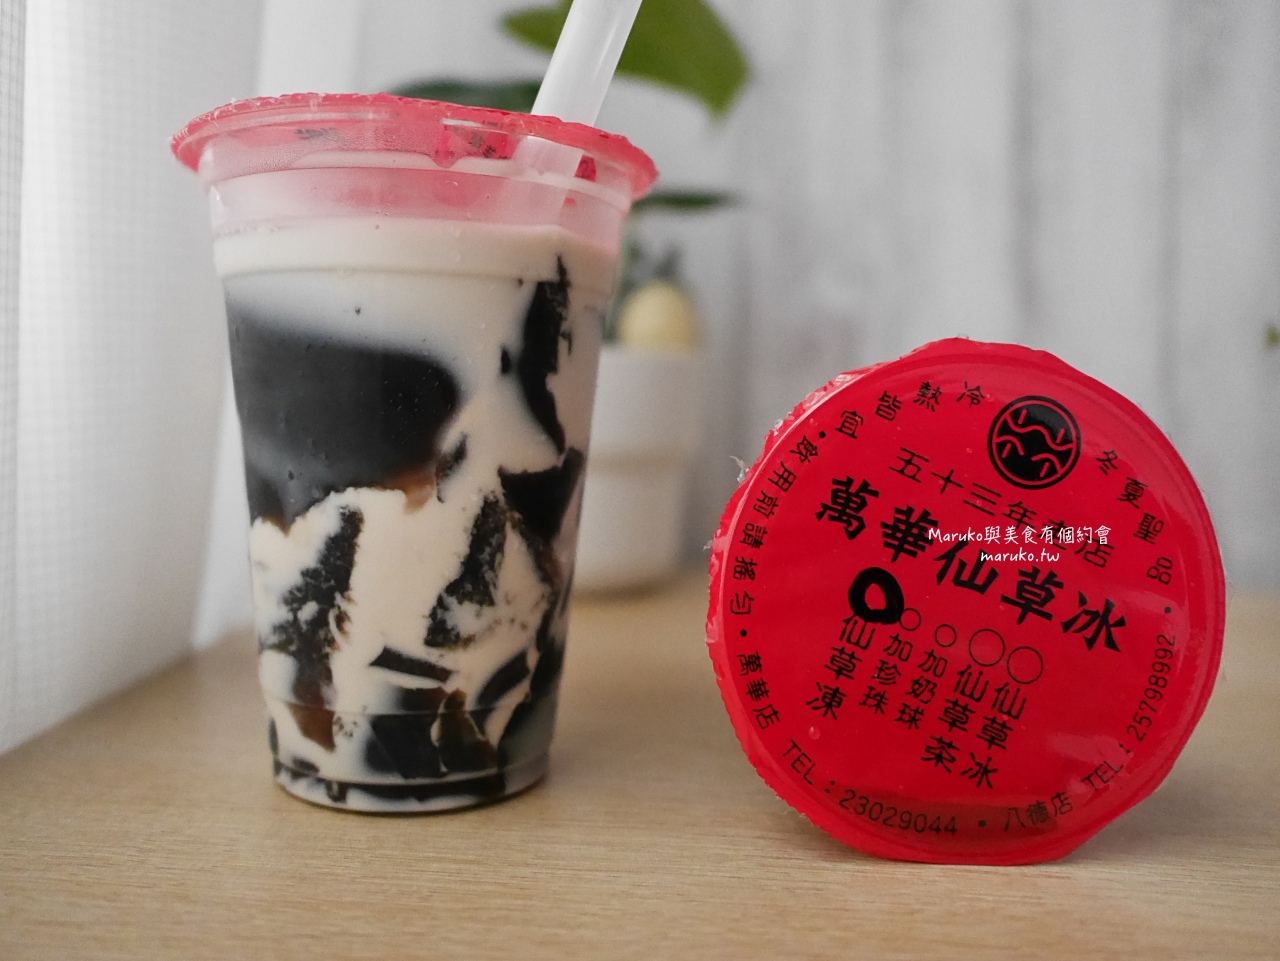 【台北】萬華林建發仙草冰,五十三年老字號仙草冰,傳統古早味最實在